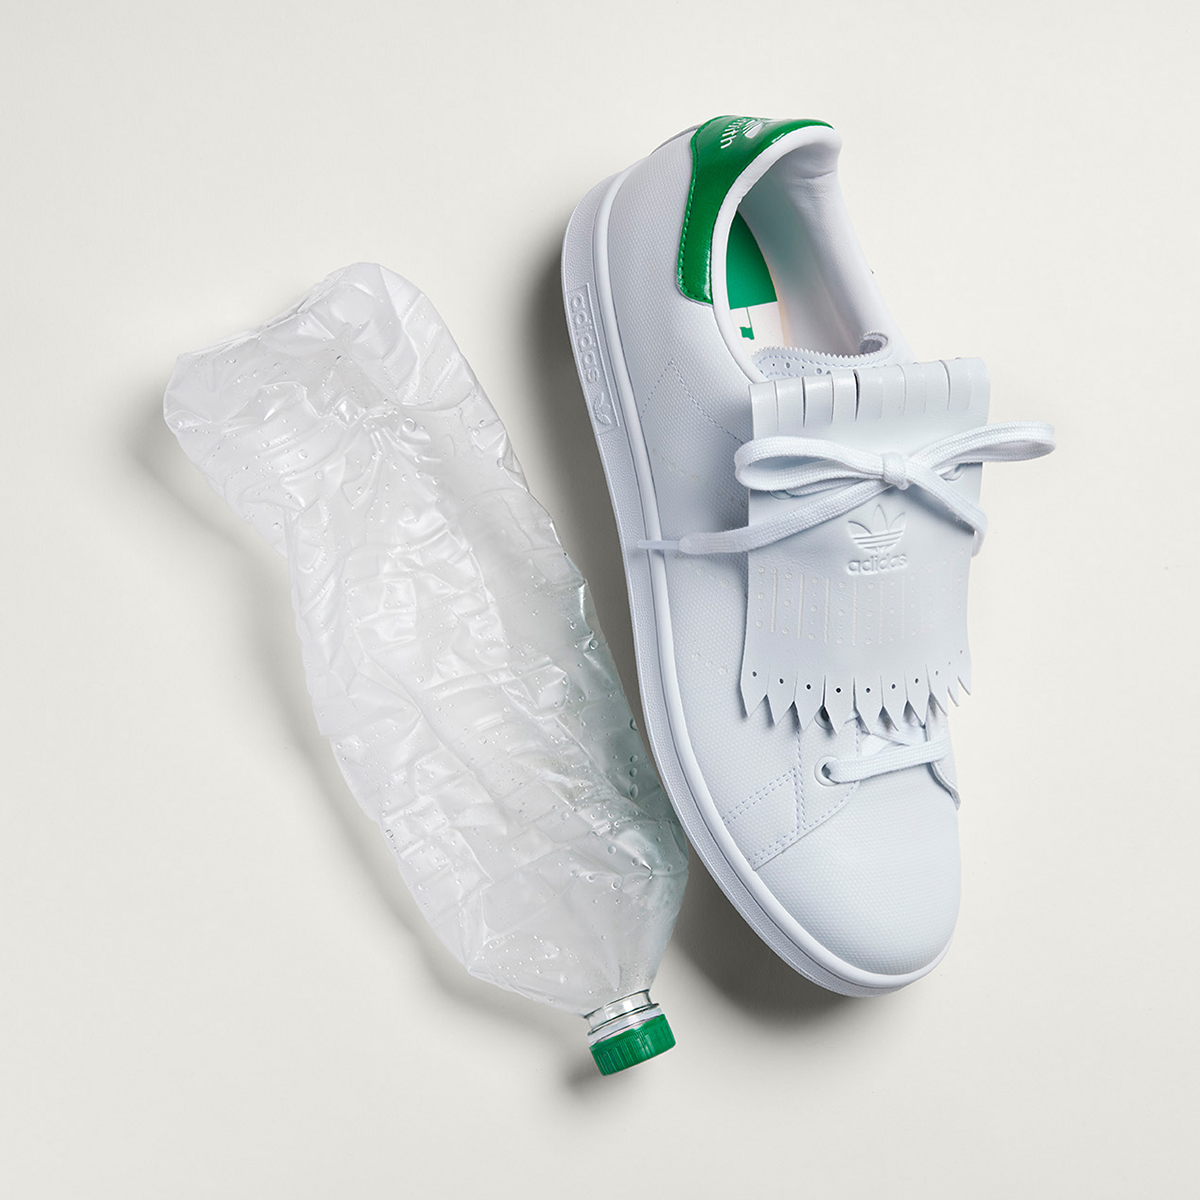 Stan Smith高球鞋款以超過50%PRIMEGREEN材質製作，實踐品牌「終結塑膠廢棄物」承諾。